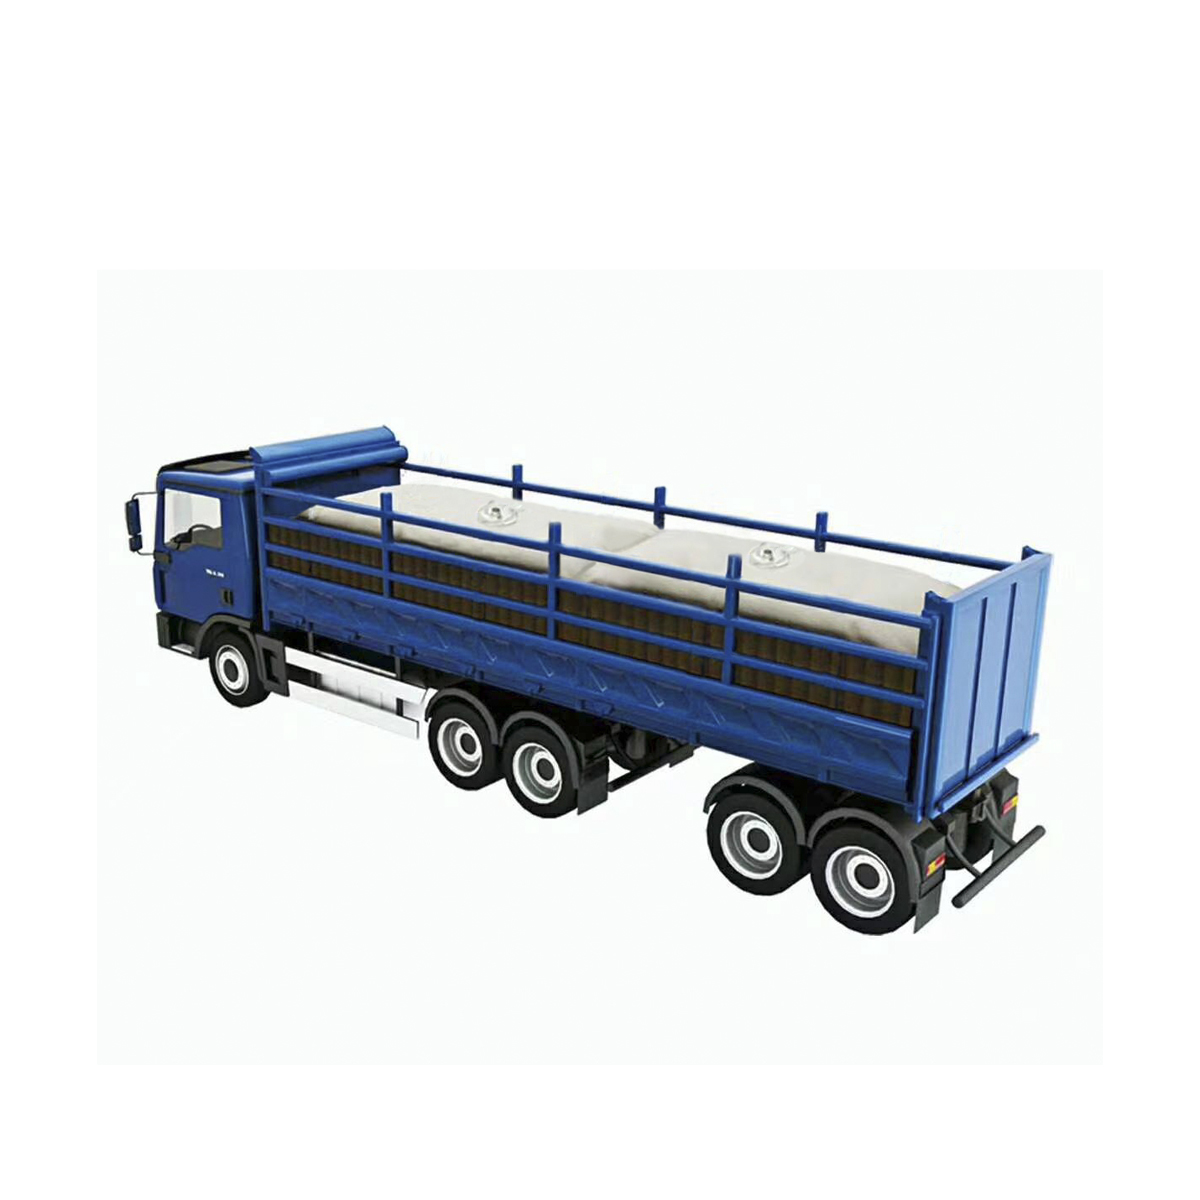 Camión Flexitank de grado alimentario para transporte de líquidos alimentarios